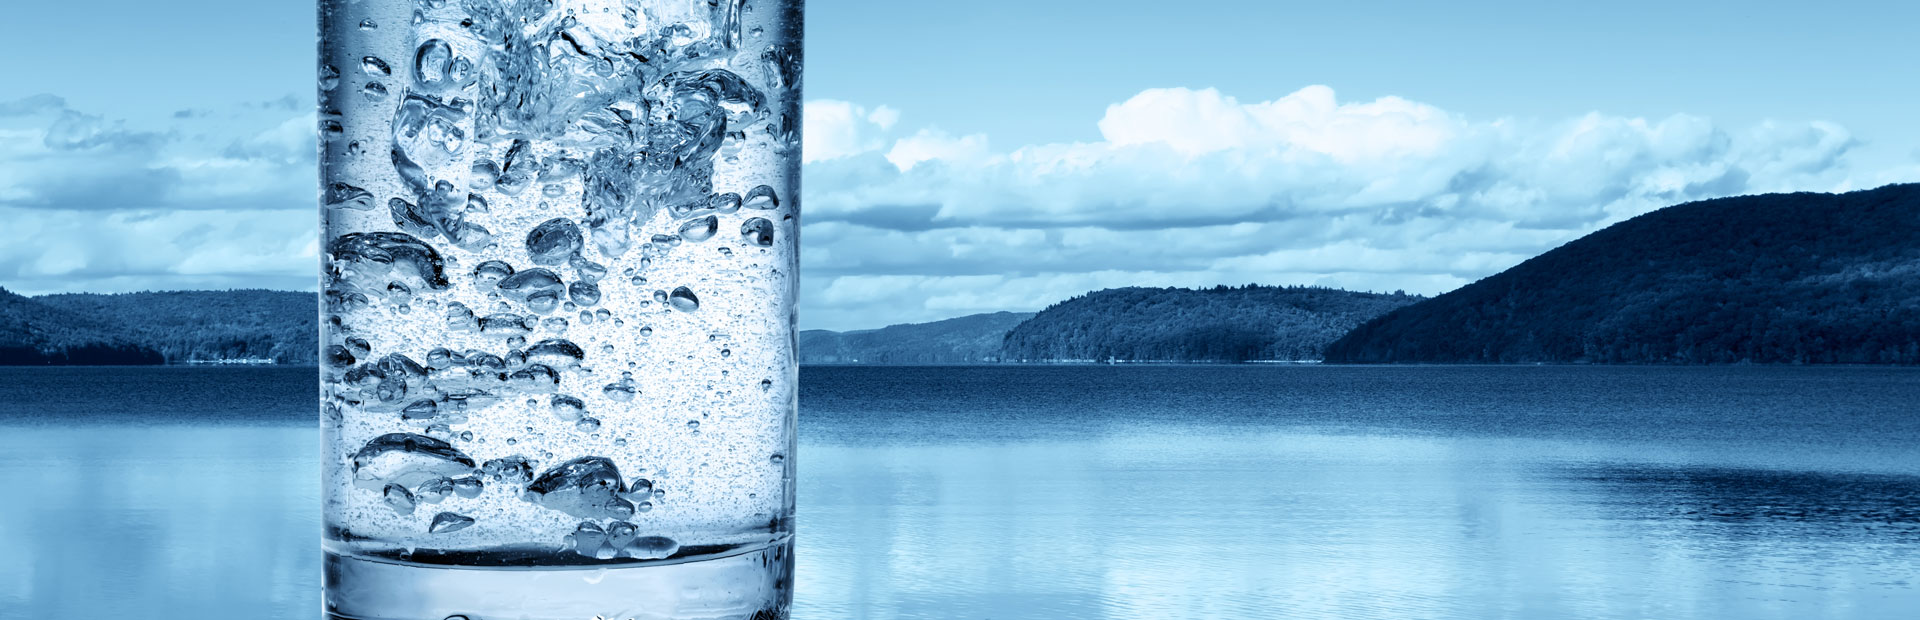 Glas Trinkwasser vor See und Bergen